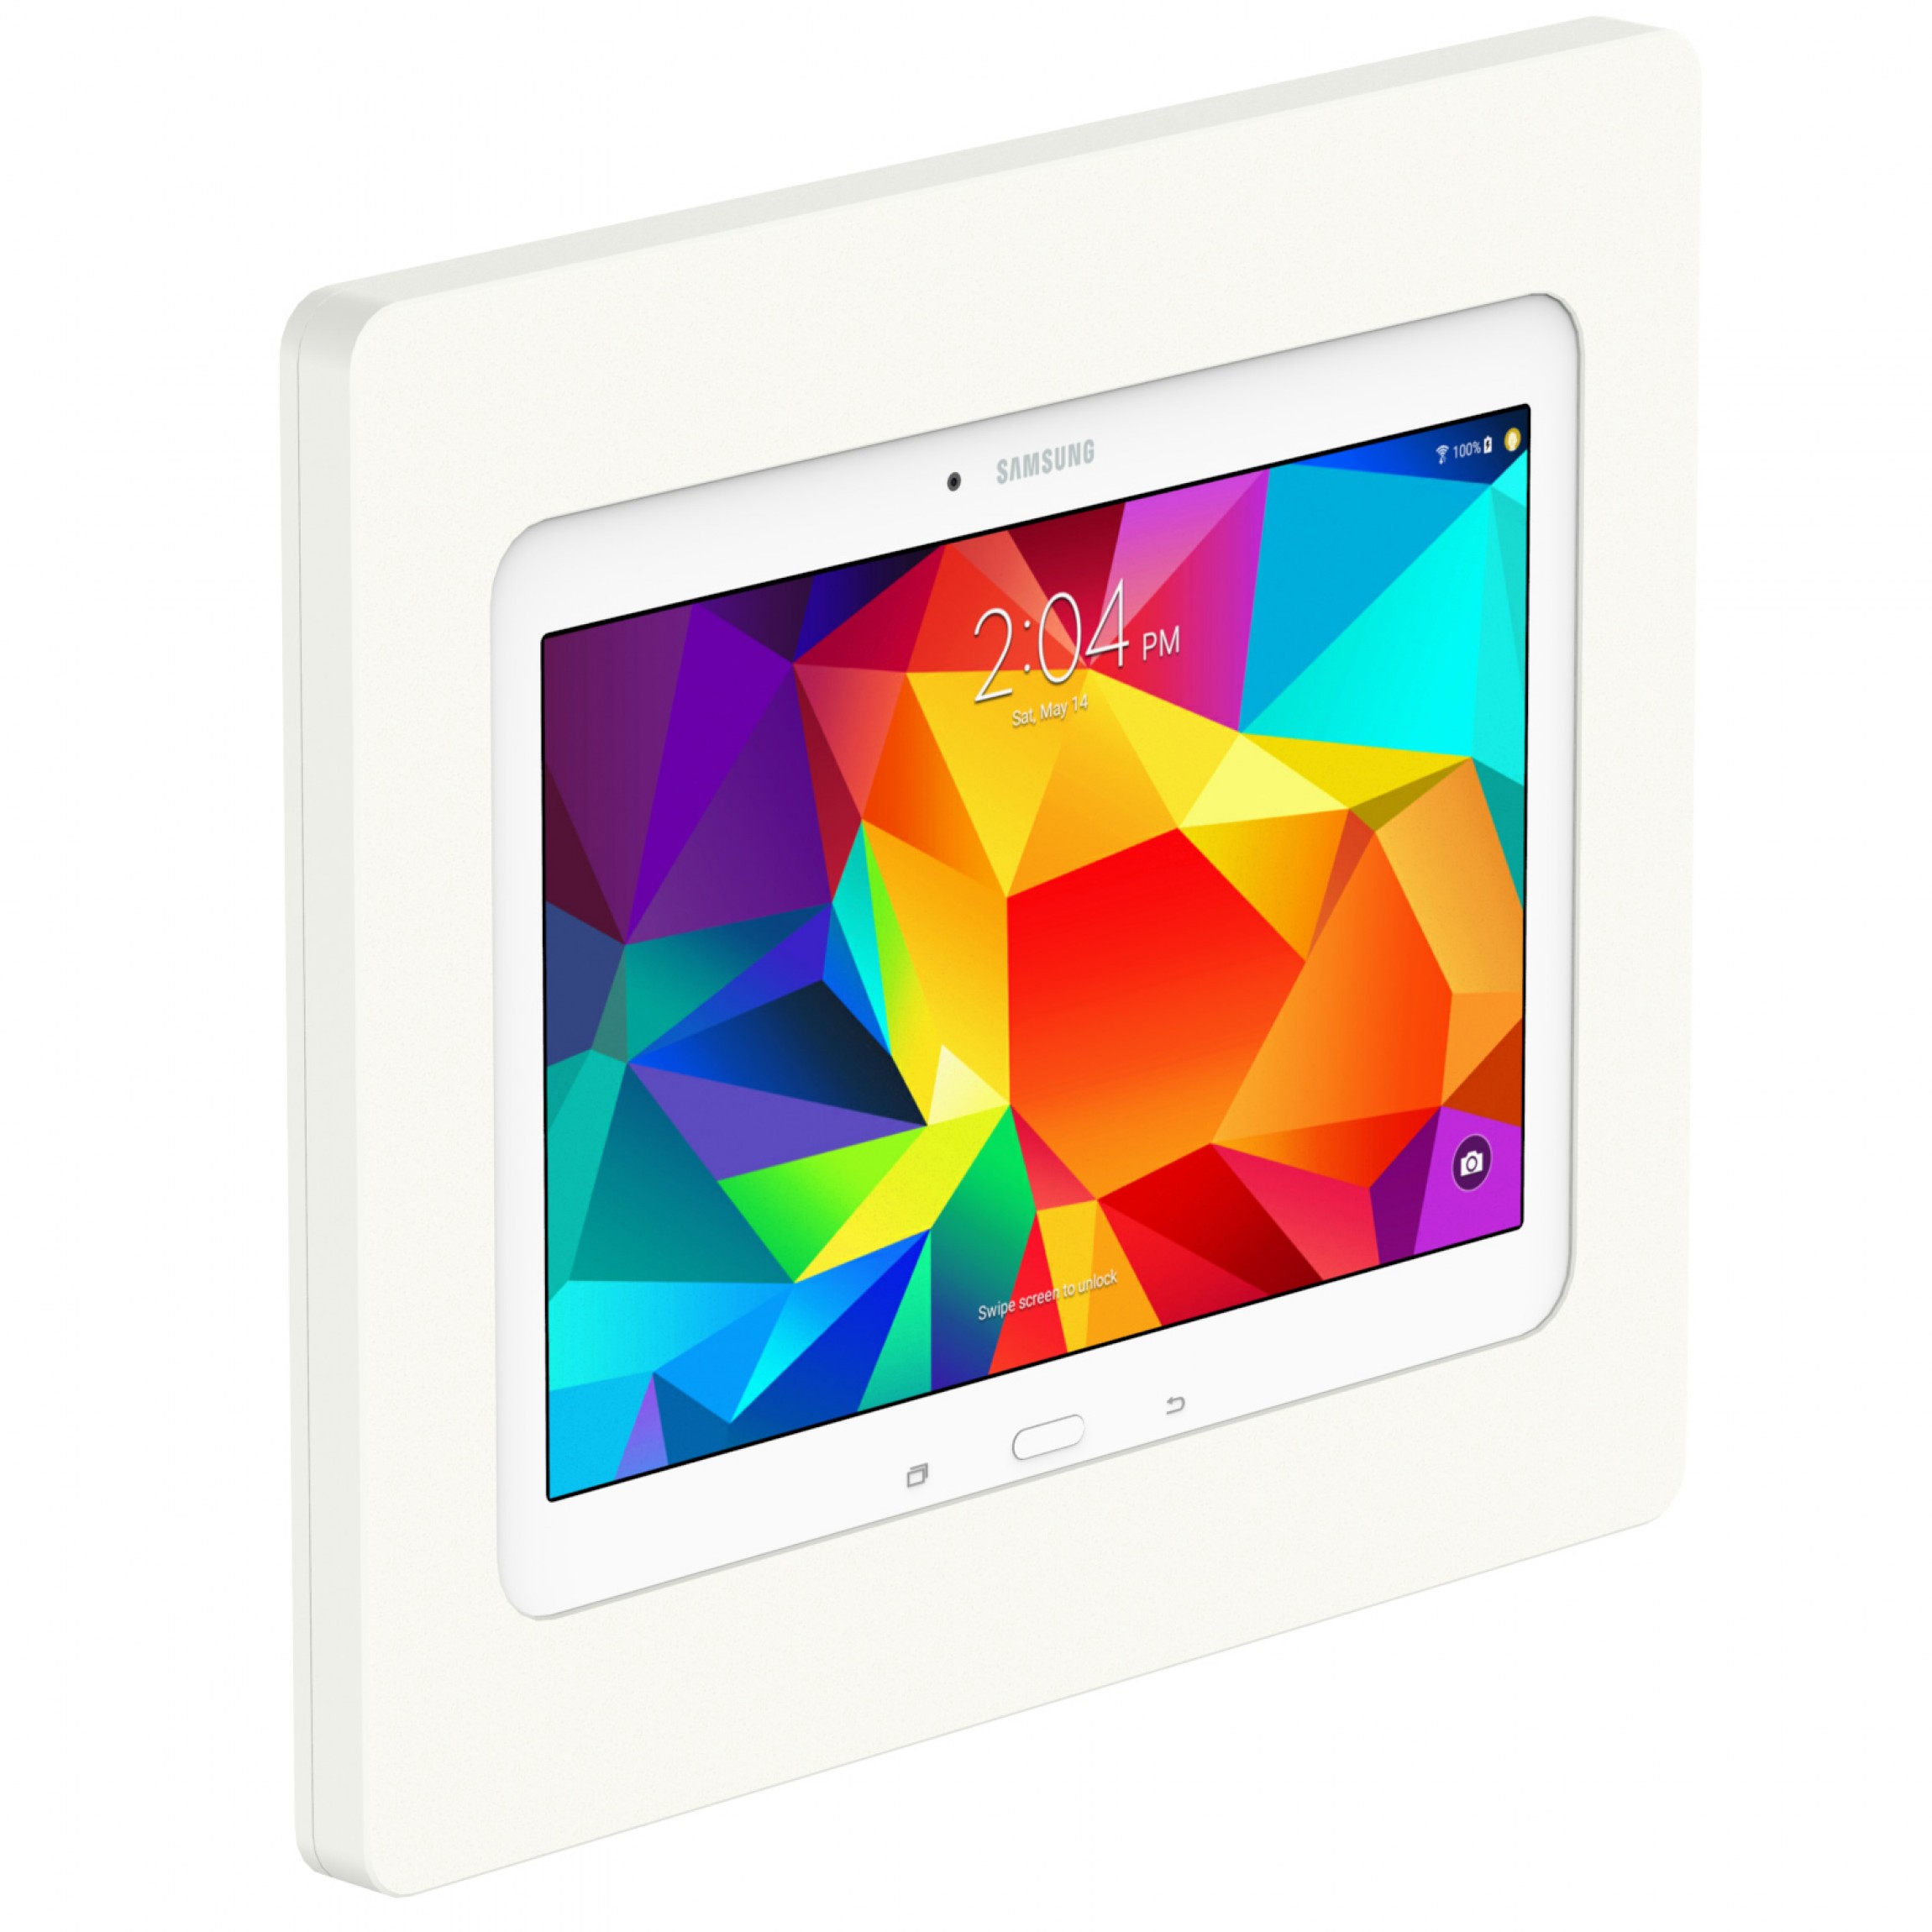 tempo Elastisch snijden VidaMount VESA Tablet Enclosure - Samsung Galaxy Tab 4 10.1 - White